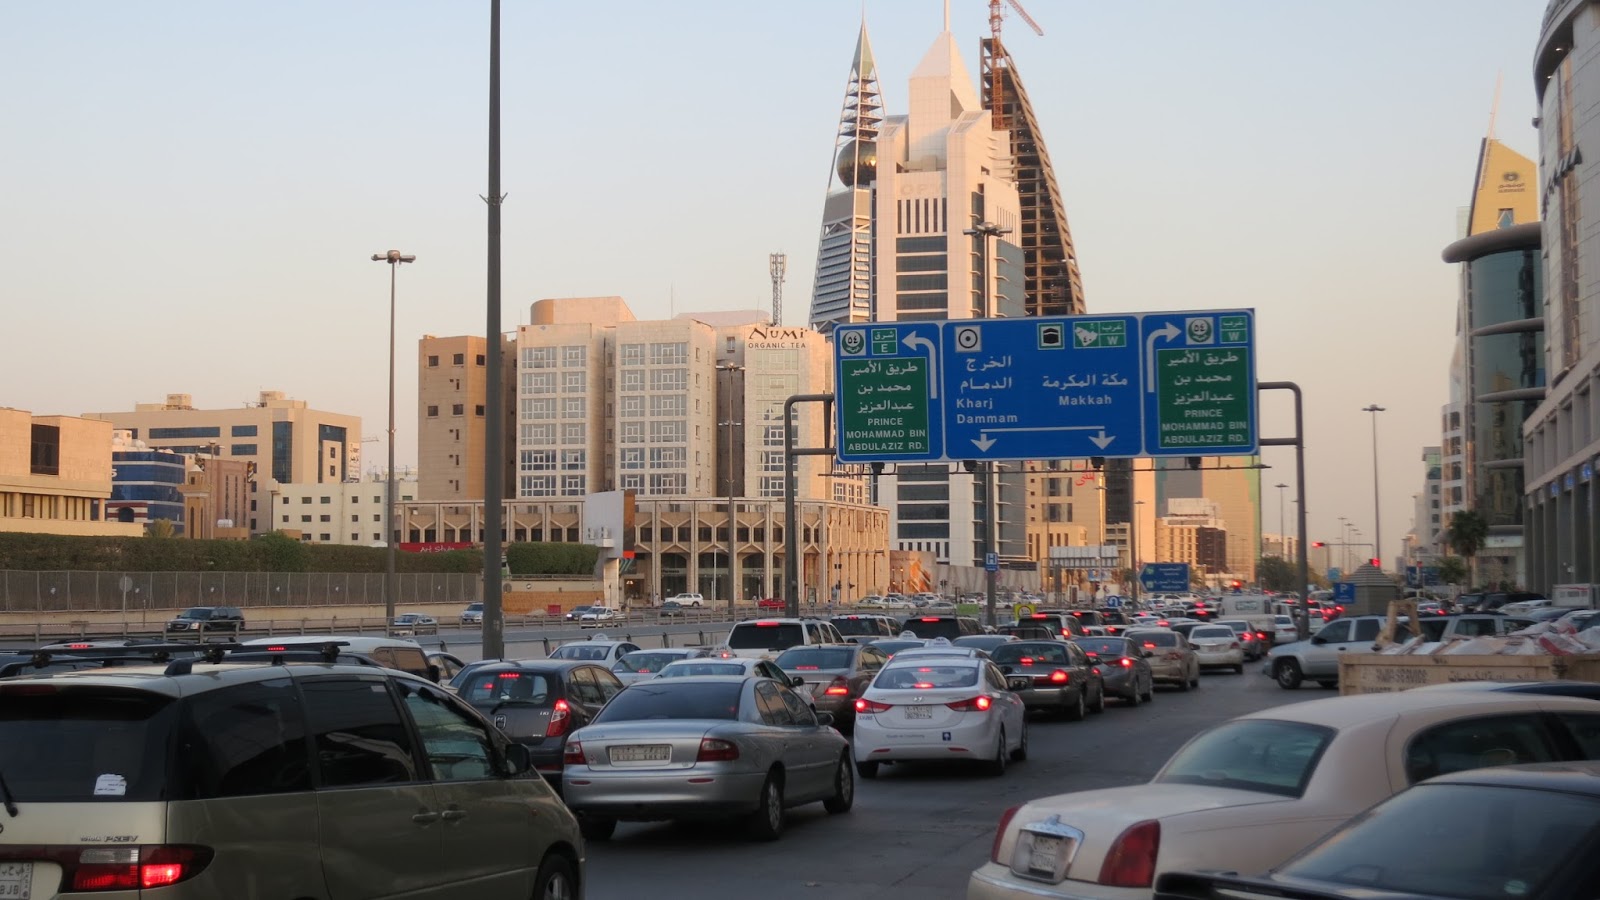 
Внедорожники составляют 29% от всего количества автомобилей в Саудии